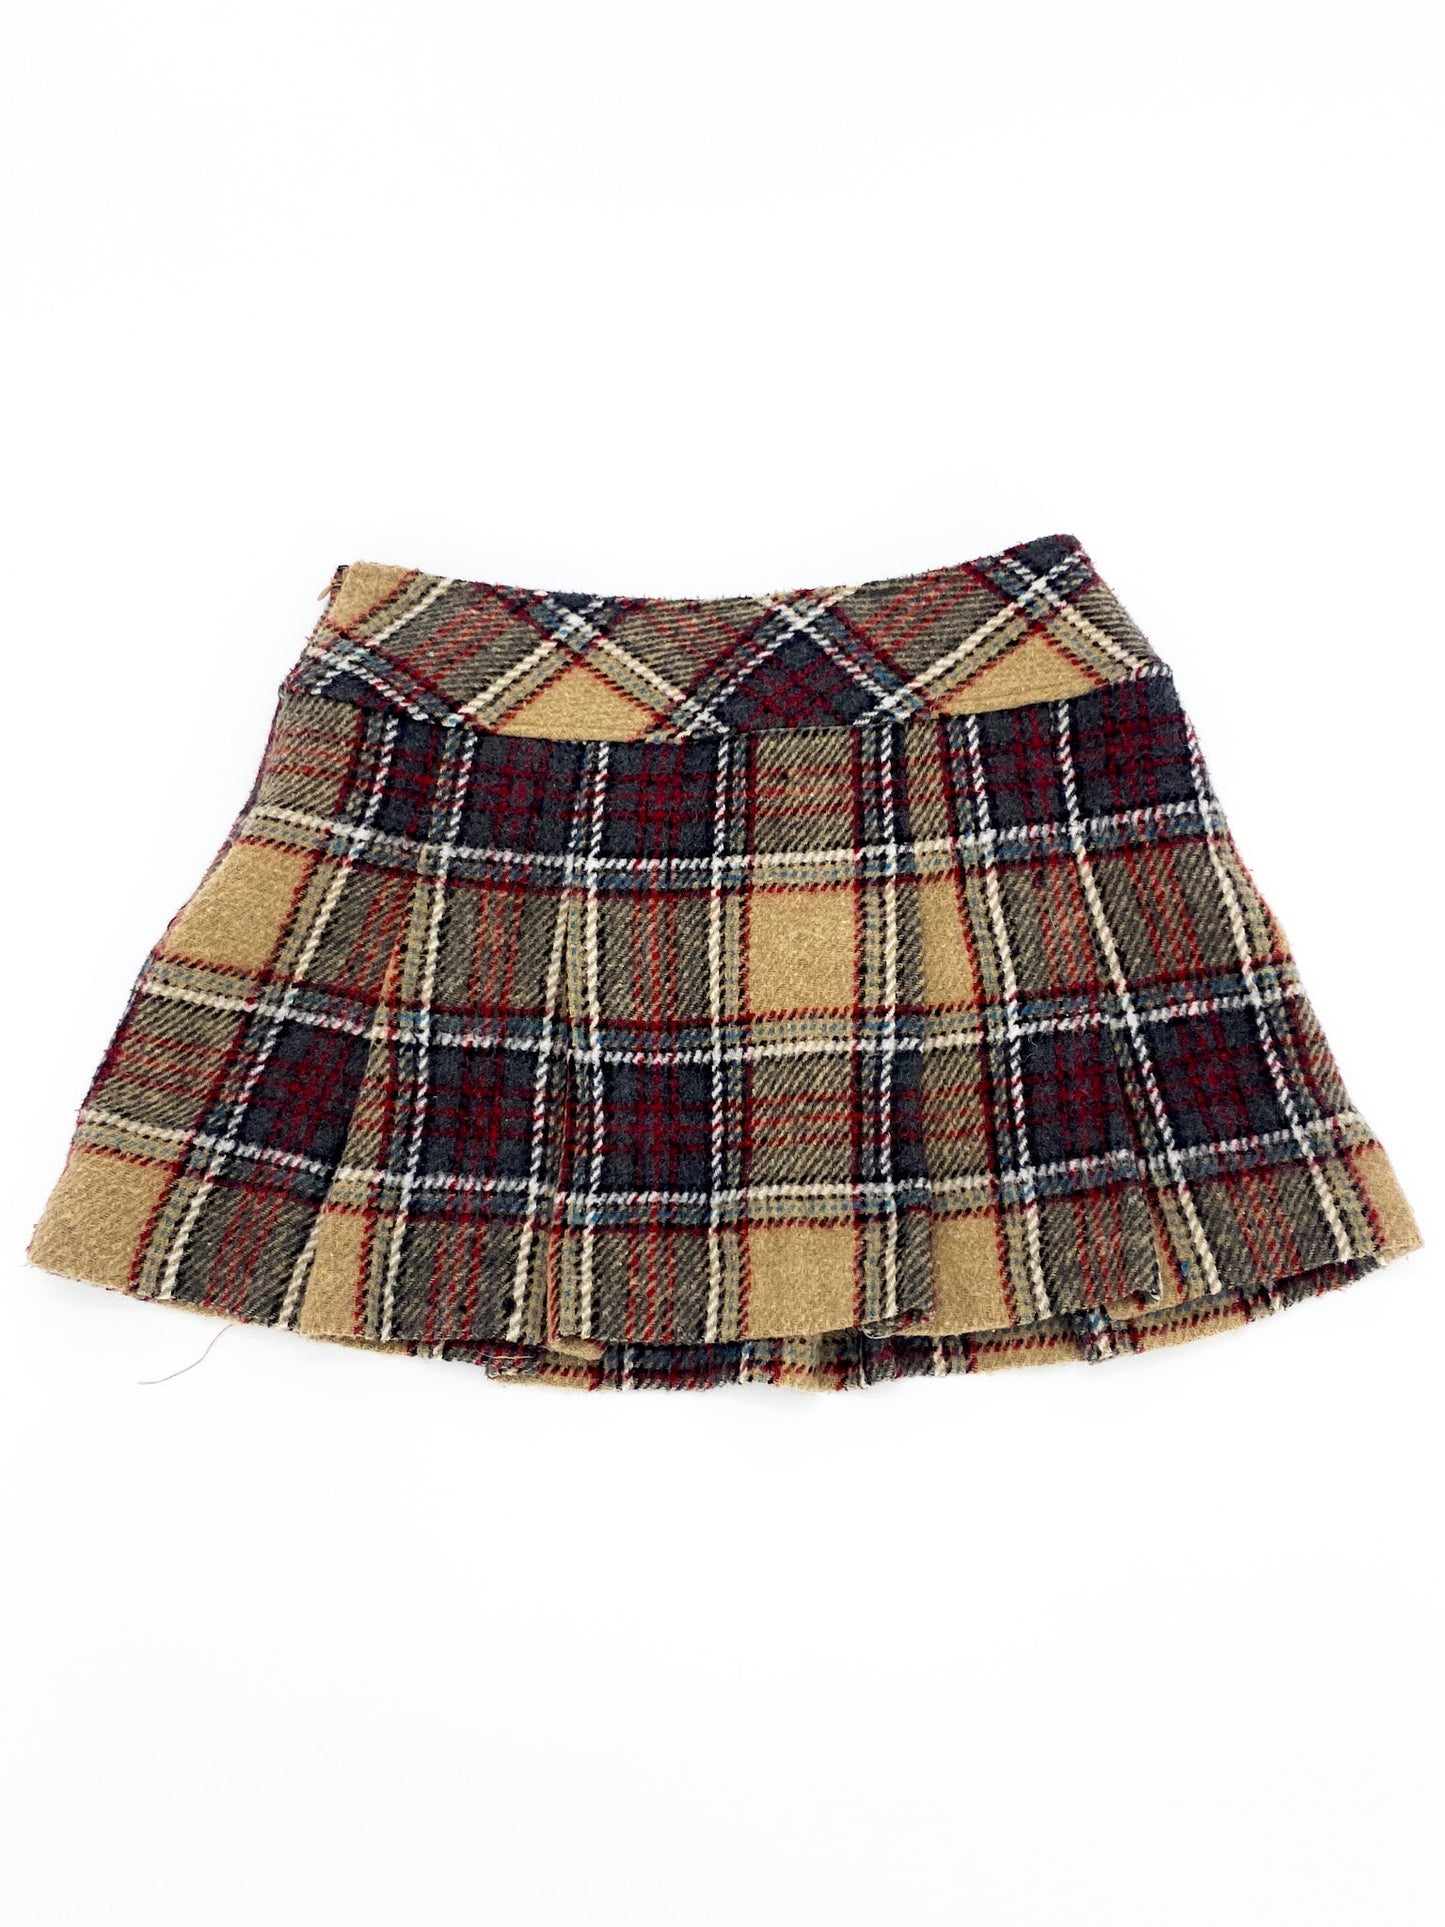 Vintage 00's Beige Wool Tartan Mini Skirt - S - Playground Vintage